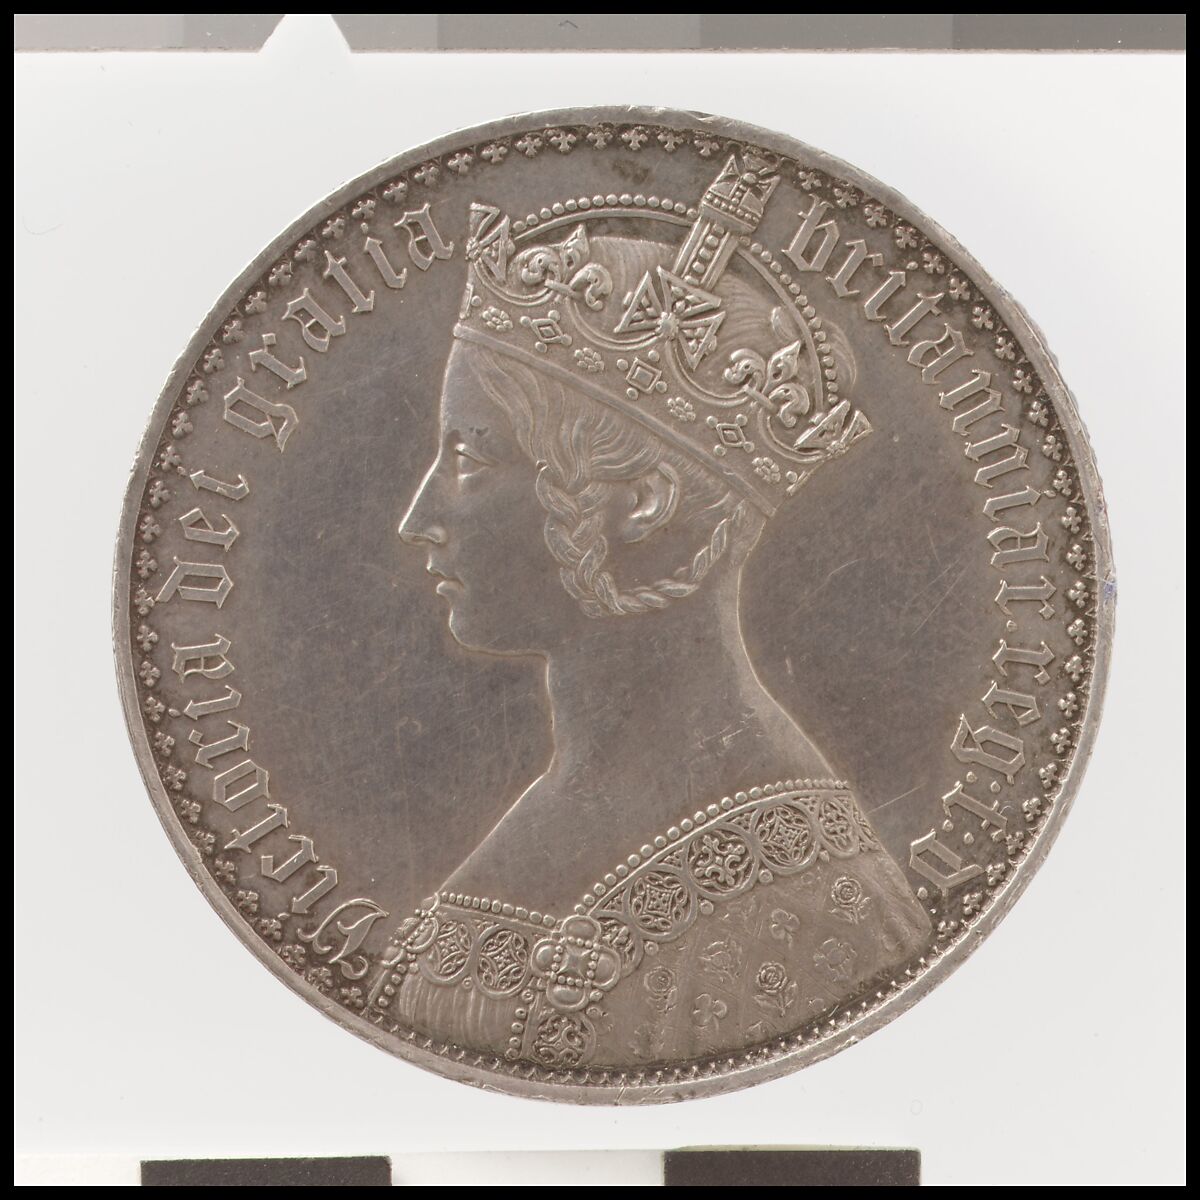 Victoria "Gothic" crown, William Wyon (British, Birmingham 1795–1851 Brighton), Silver, British 